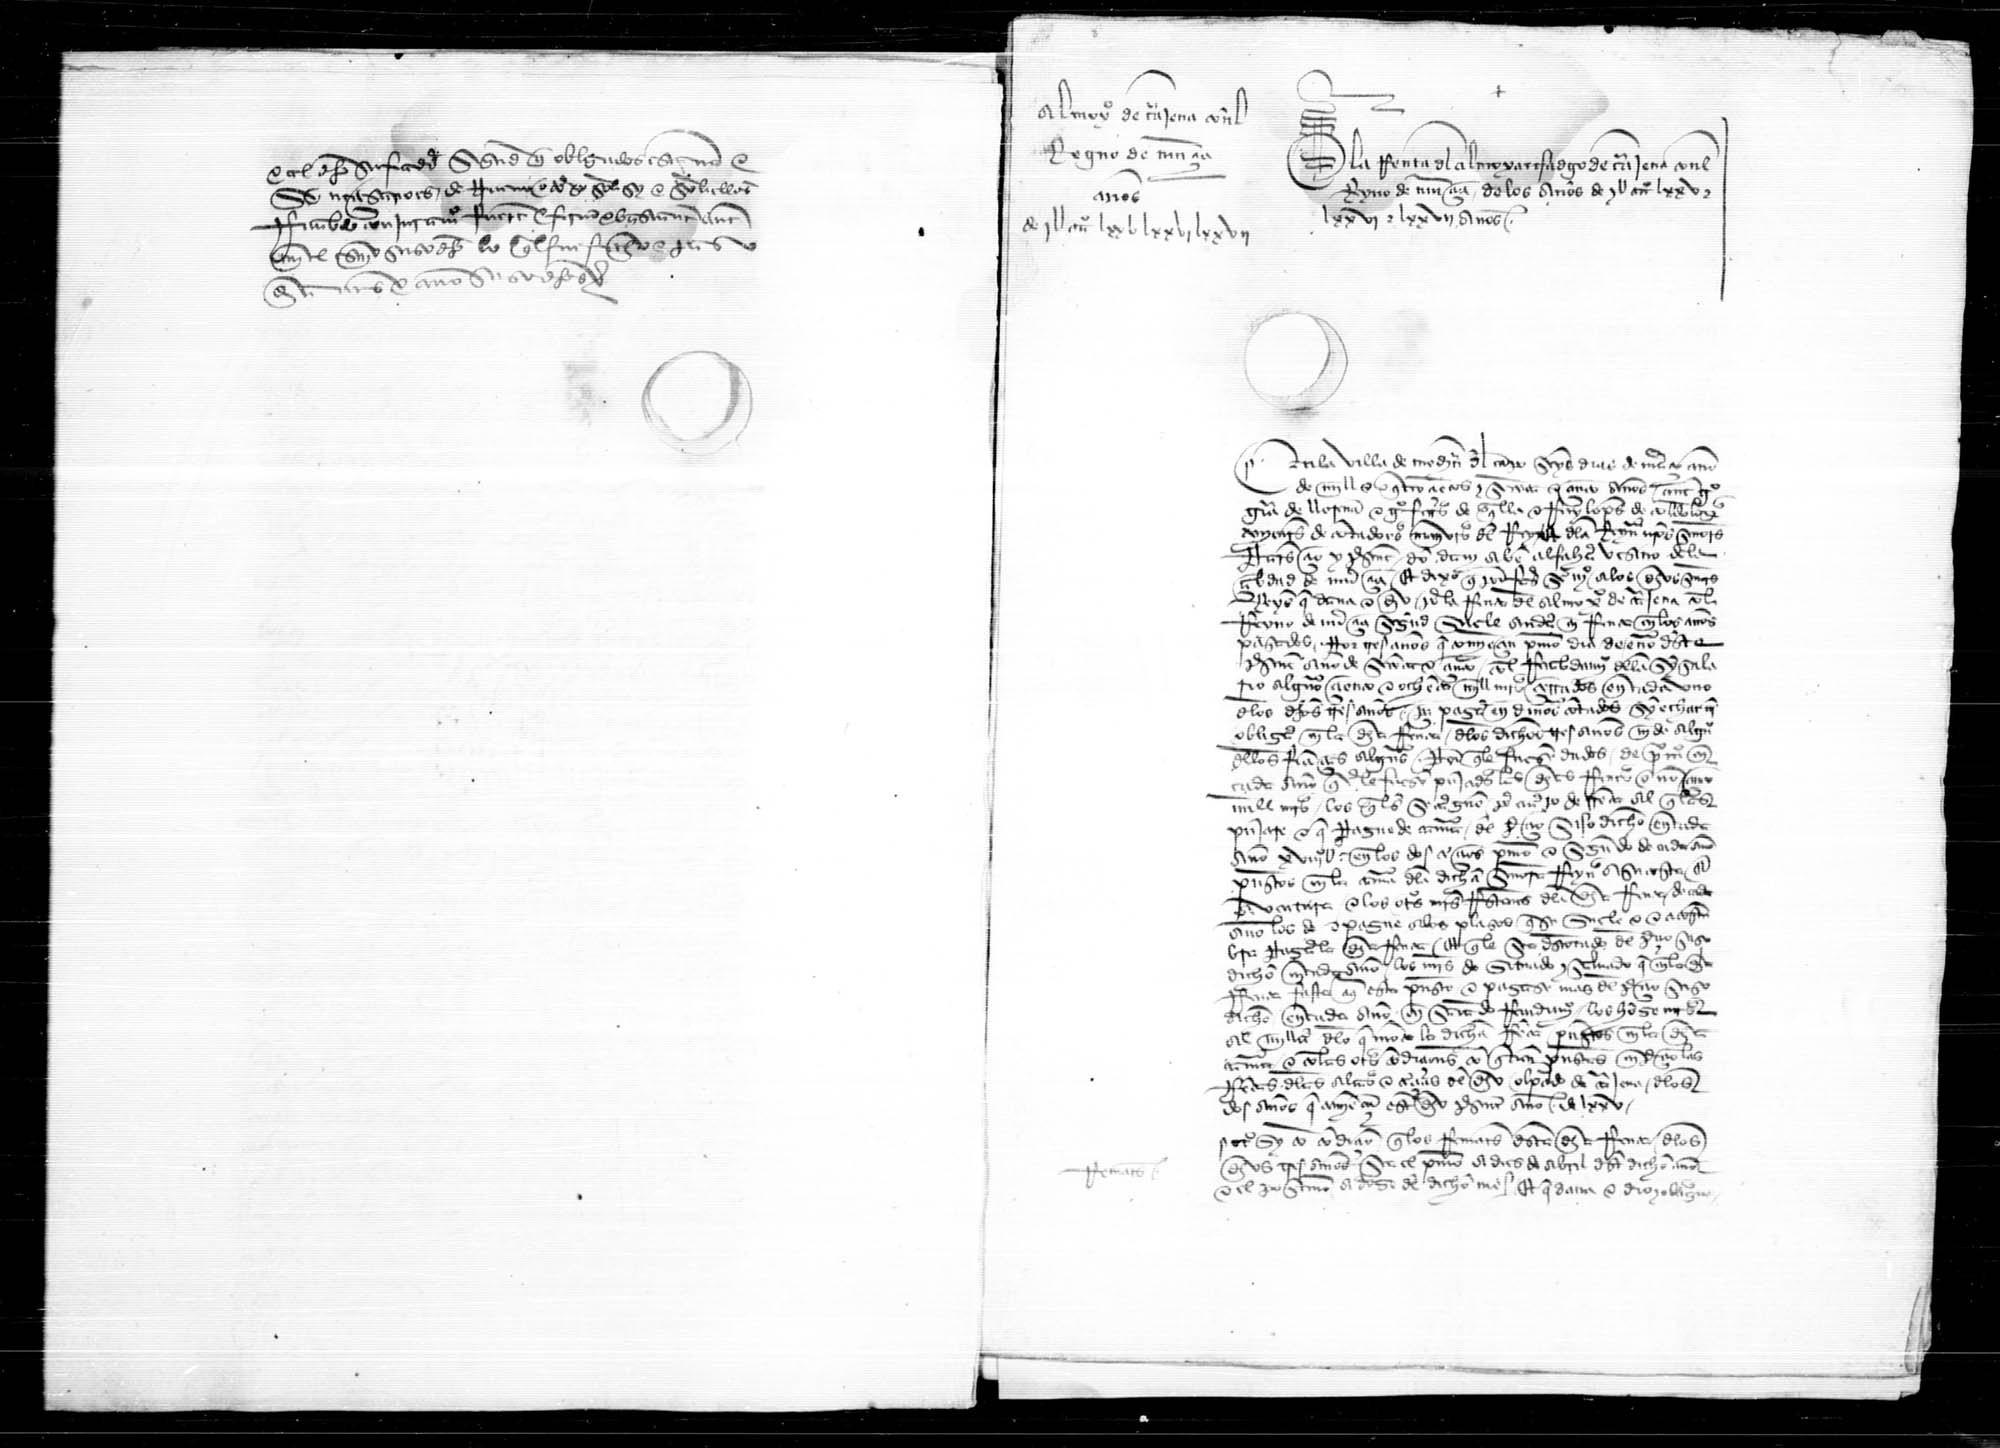 Escrituras de arrendamiento y carta de recaudo de la renta del almojarifazgo del Obispado de Cartagena.